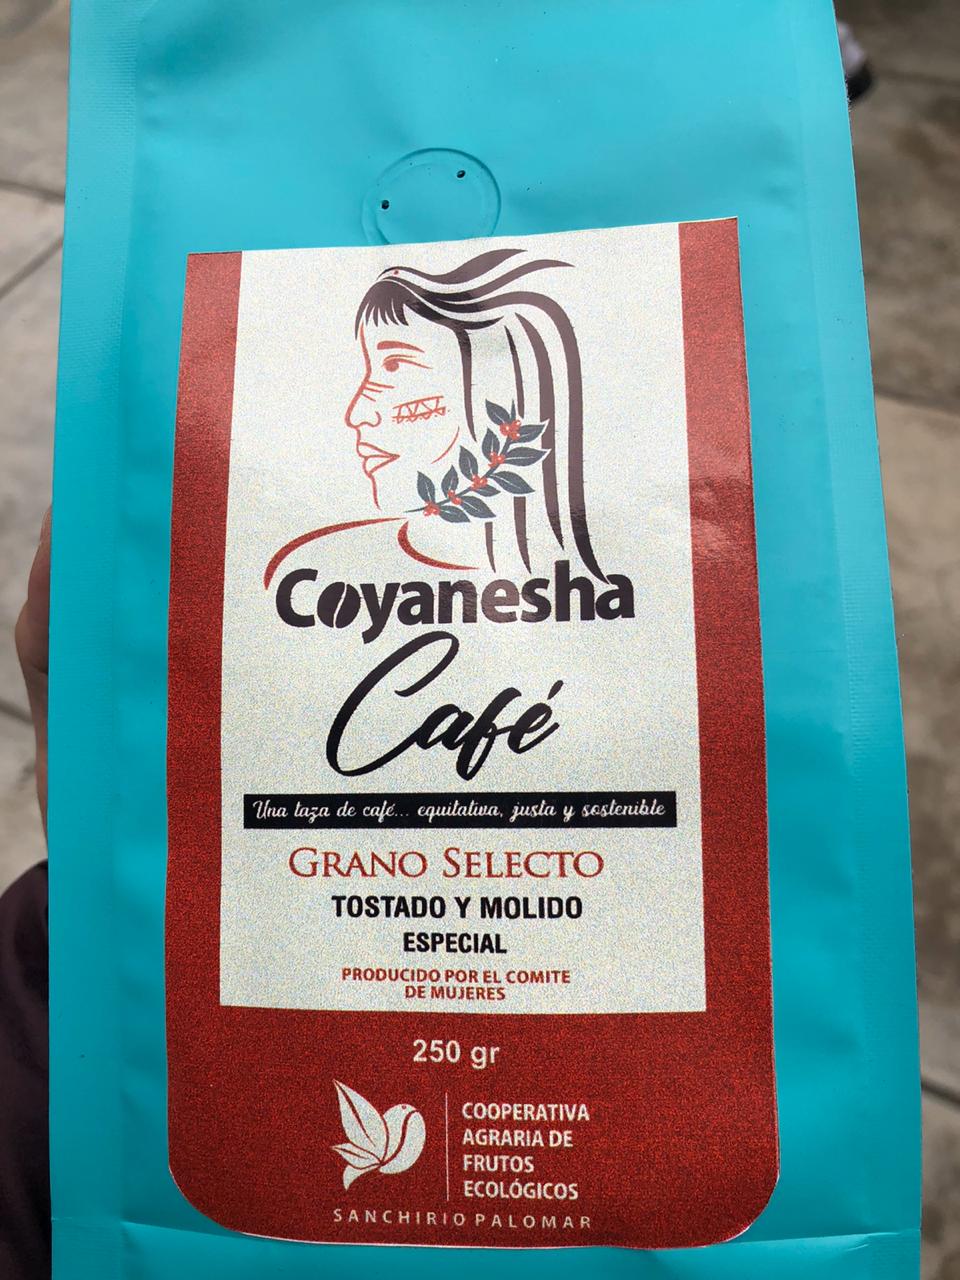 Coyanesha logo